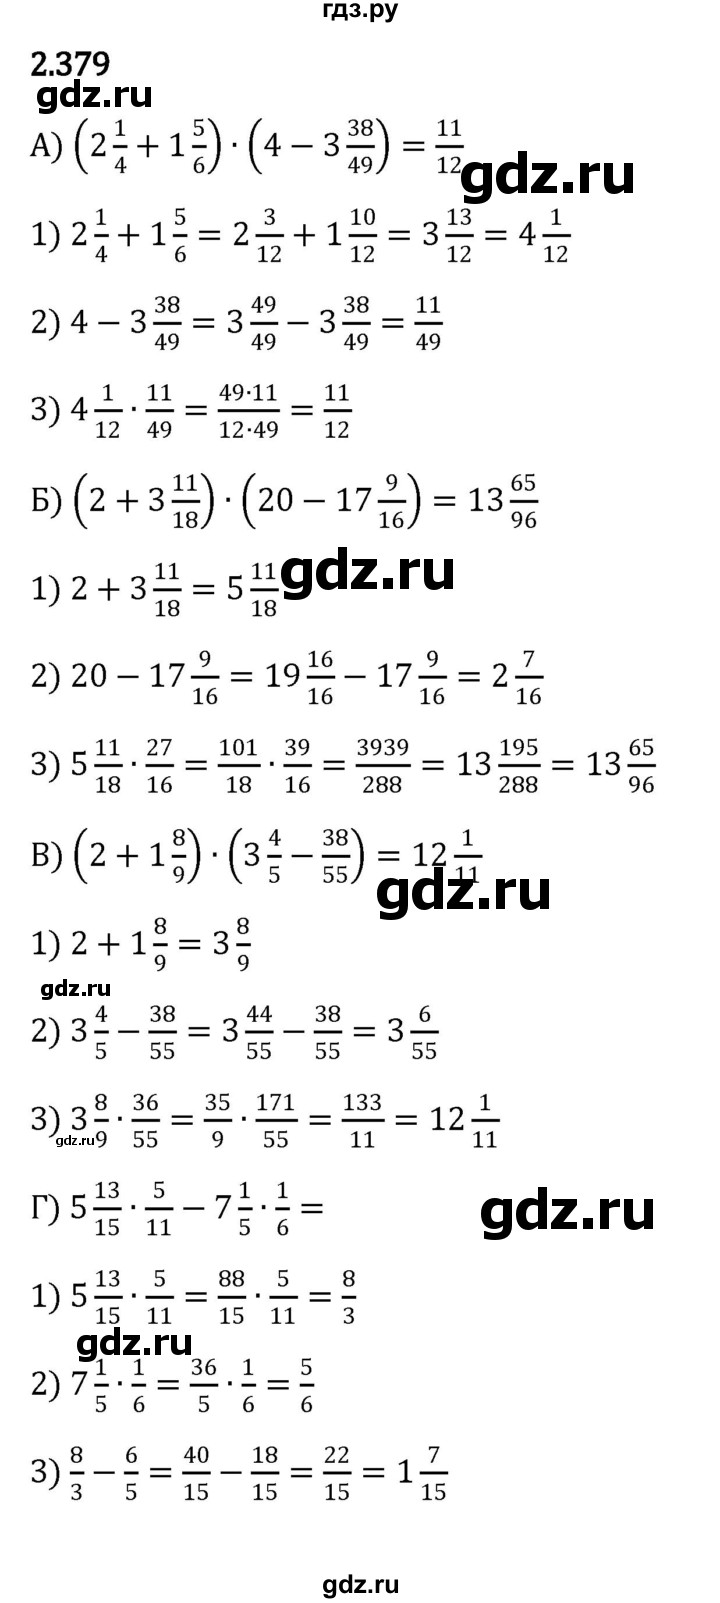 ГДЗ по математике для 5 класса — Герасимов